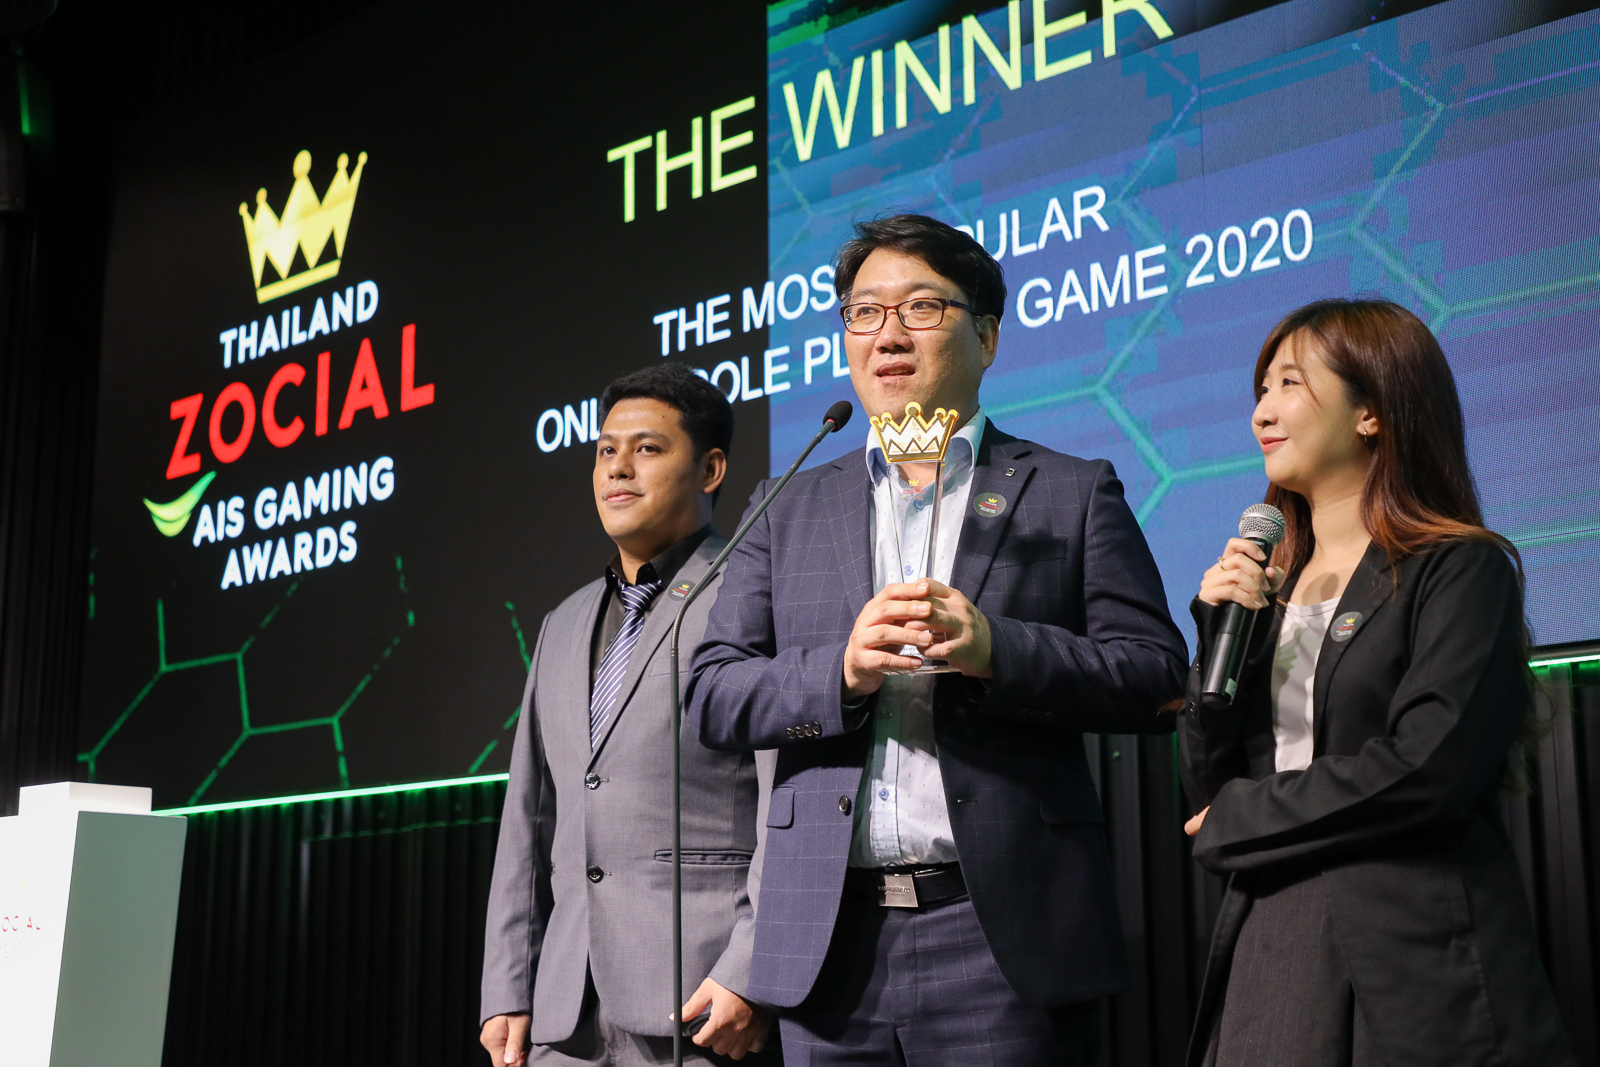 กราวิตี้ เกม เทค ครองใจเกมเมอร์ คว้ารางวัล The Most Popular Game Publisher ในงาน Thailand Zocial AIS Gaming Awards